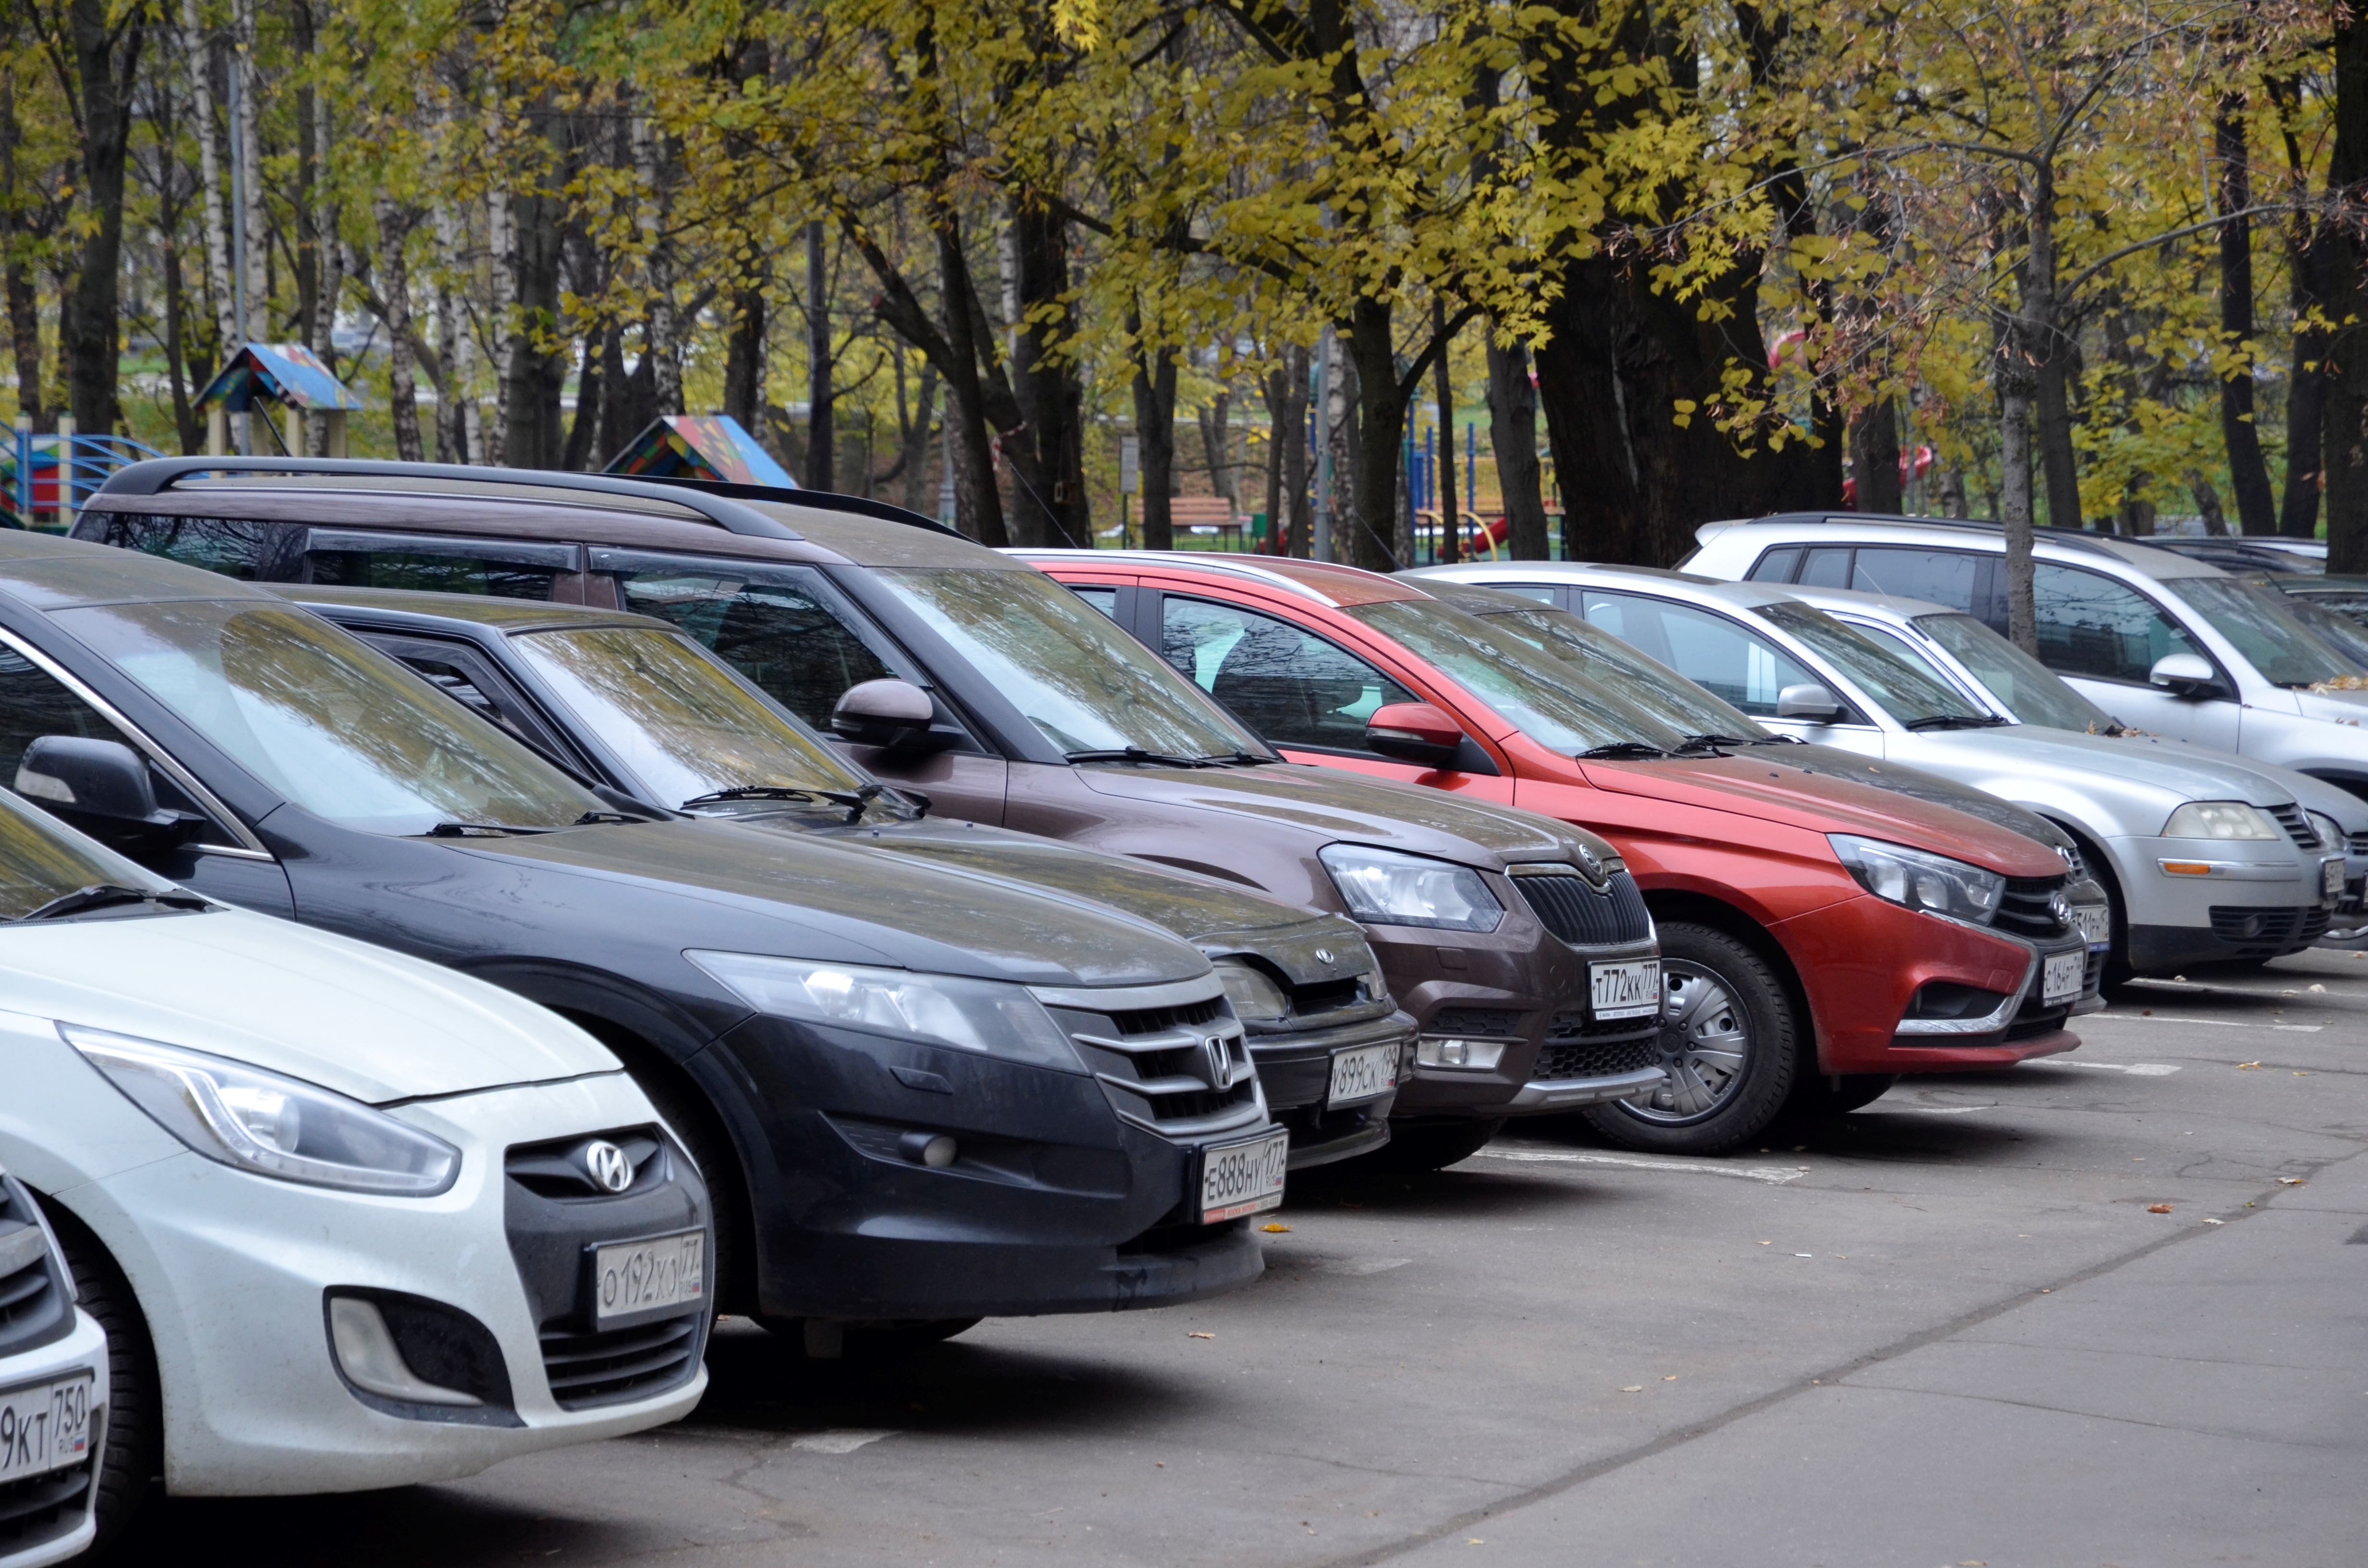 Пробег машины: Какой пробег считается нормальным при покупке подержанного автомобиля?